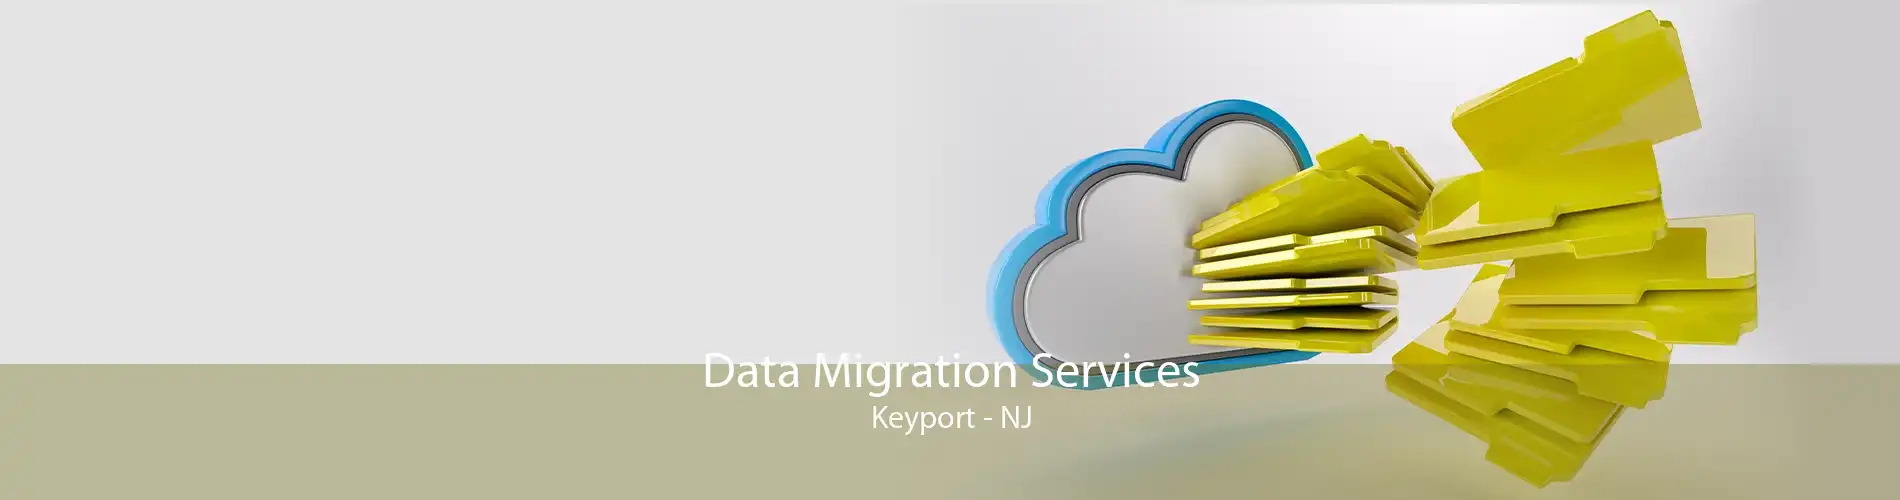 Data Migration Services Keyport - NJ